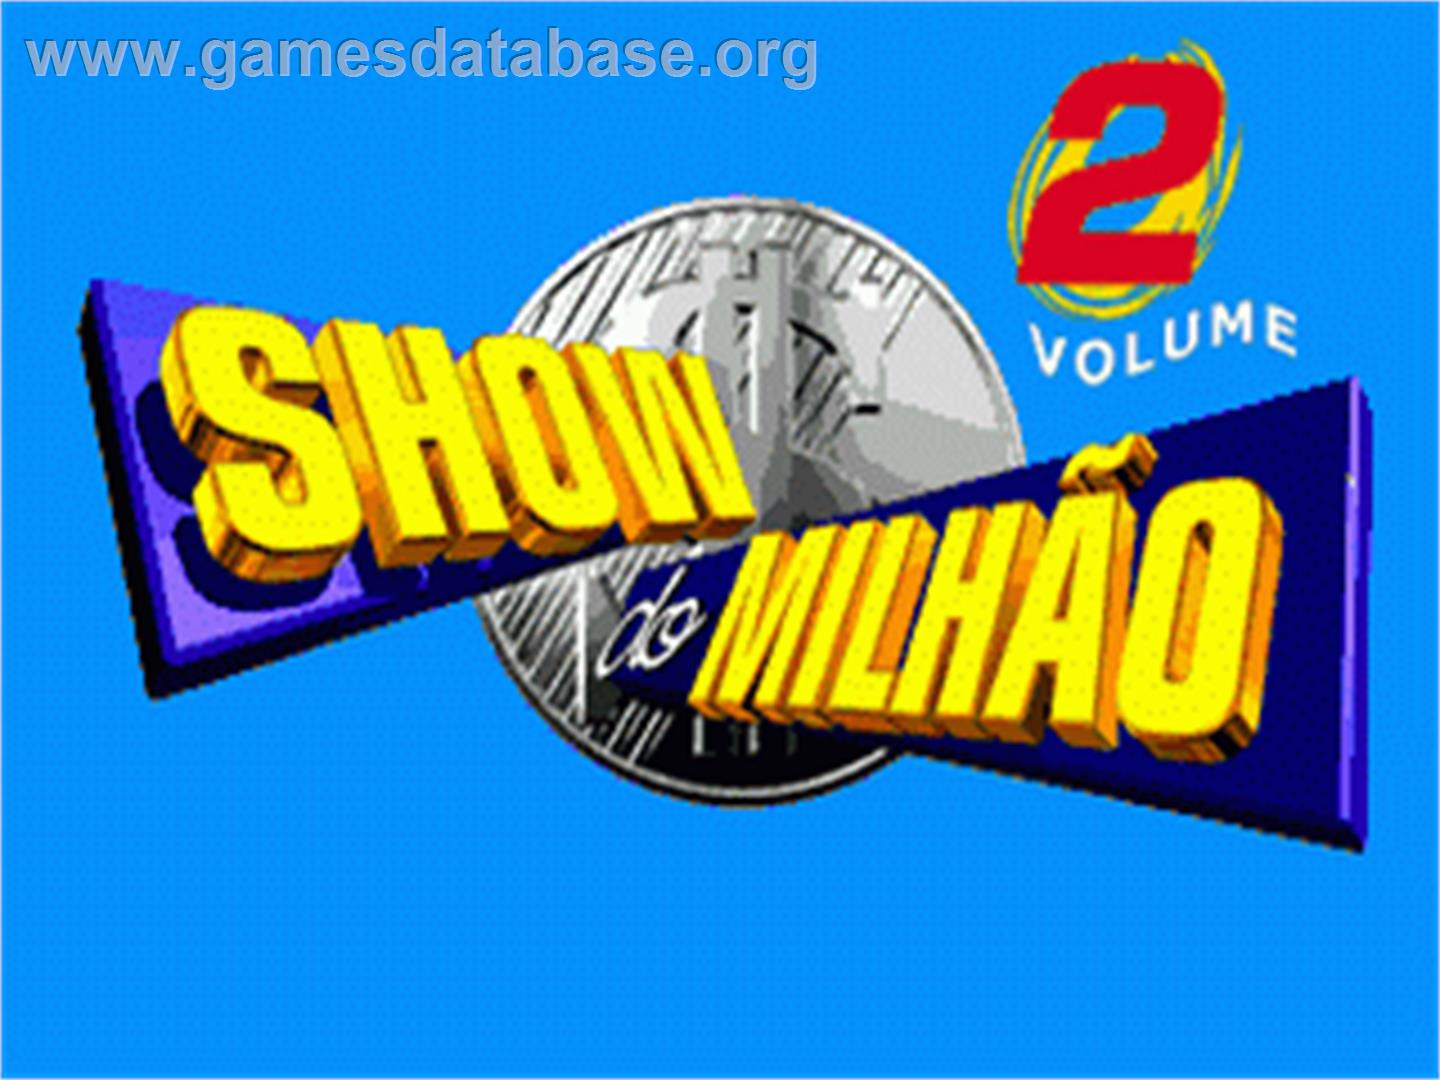 Show do Milhão Volume 2 - Sega Genesis - Artwork - Title Screen